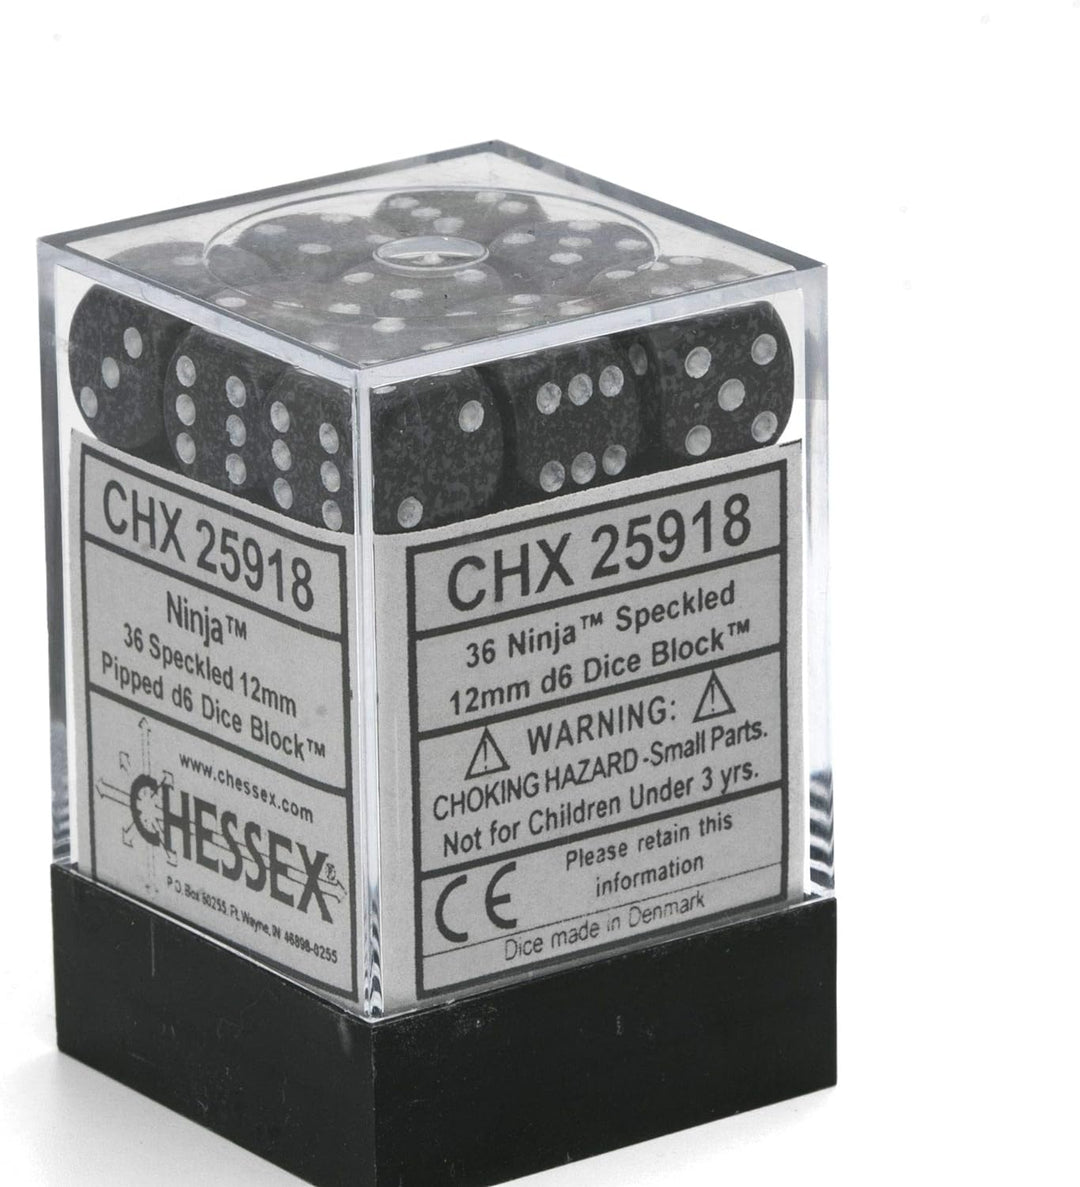 Chessex 25918 accessories.